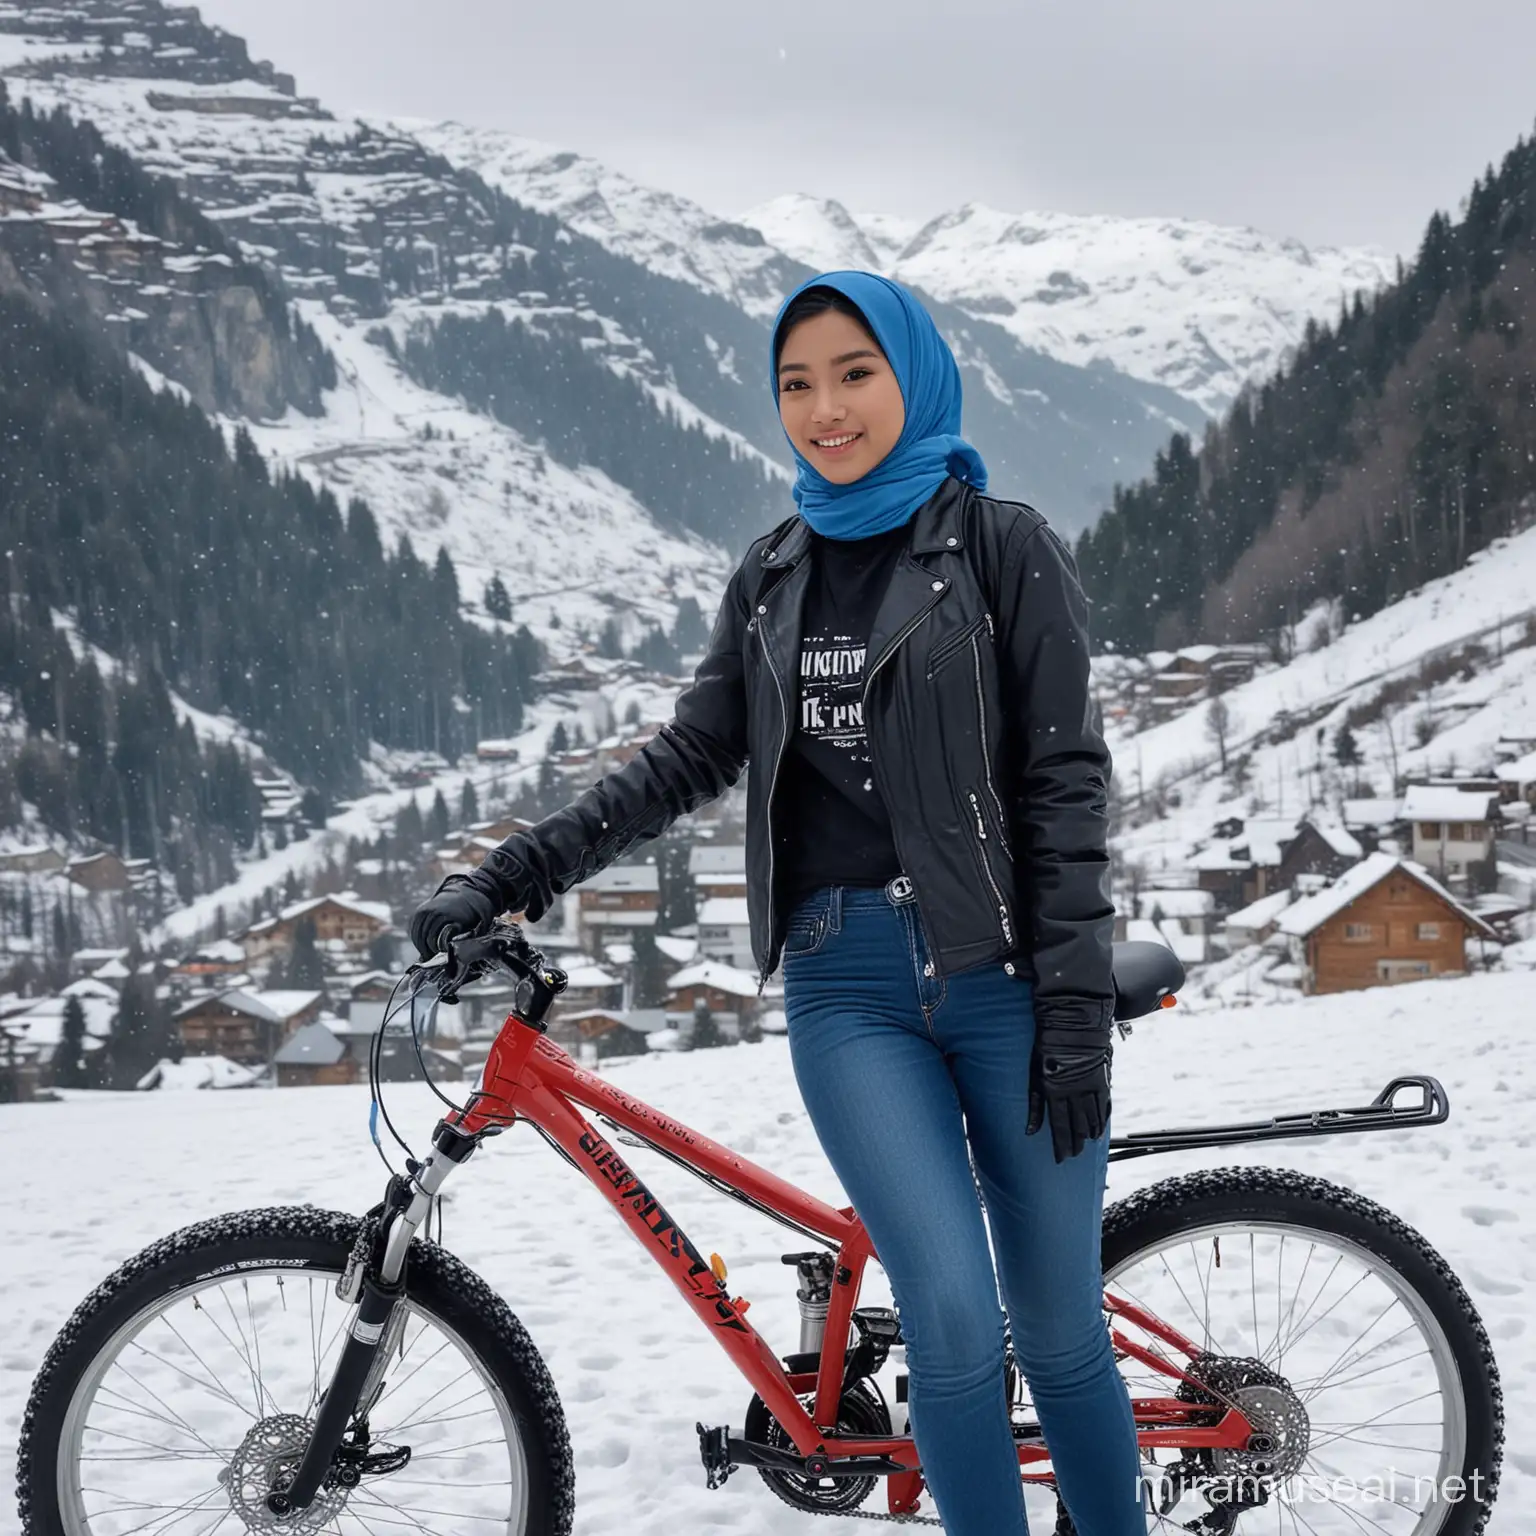 Gadis indonesia unuur 20 tahun,jilbab biru,baju kaos dan jaket hitam,celana blue jean,sedang bersepeda hitam di pegunungan alpen yg bersalju di swiss